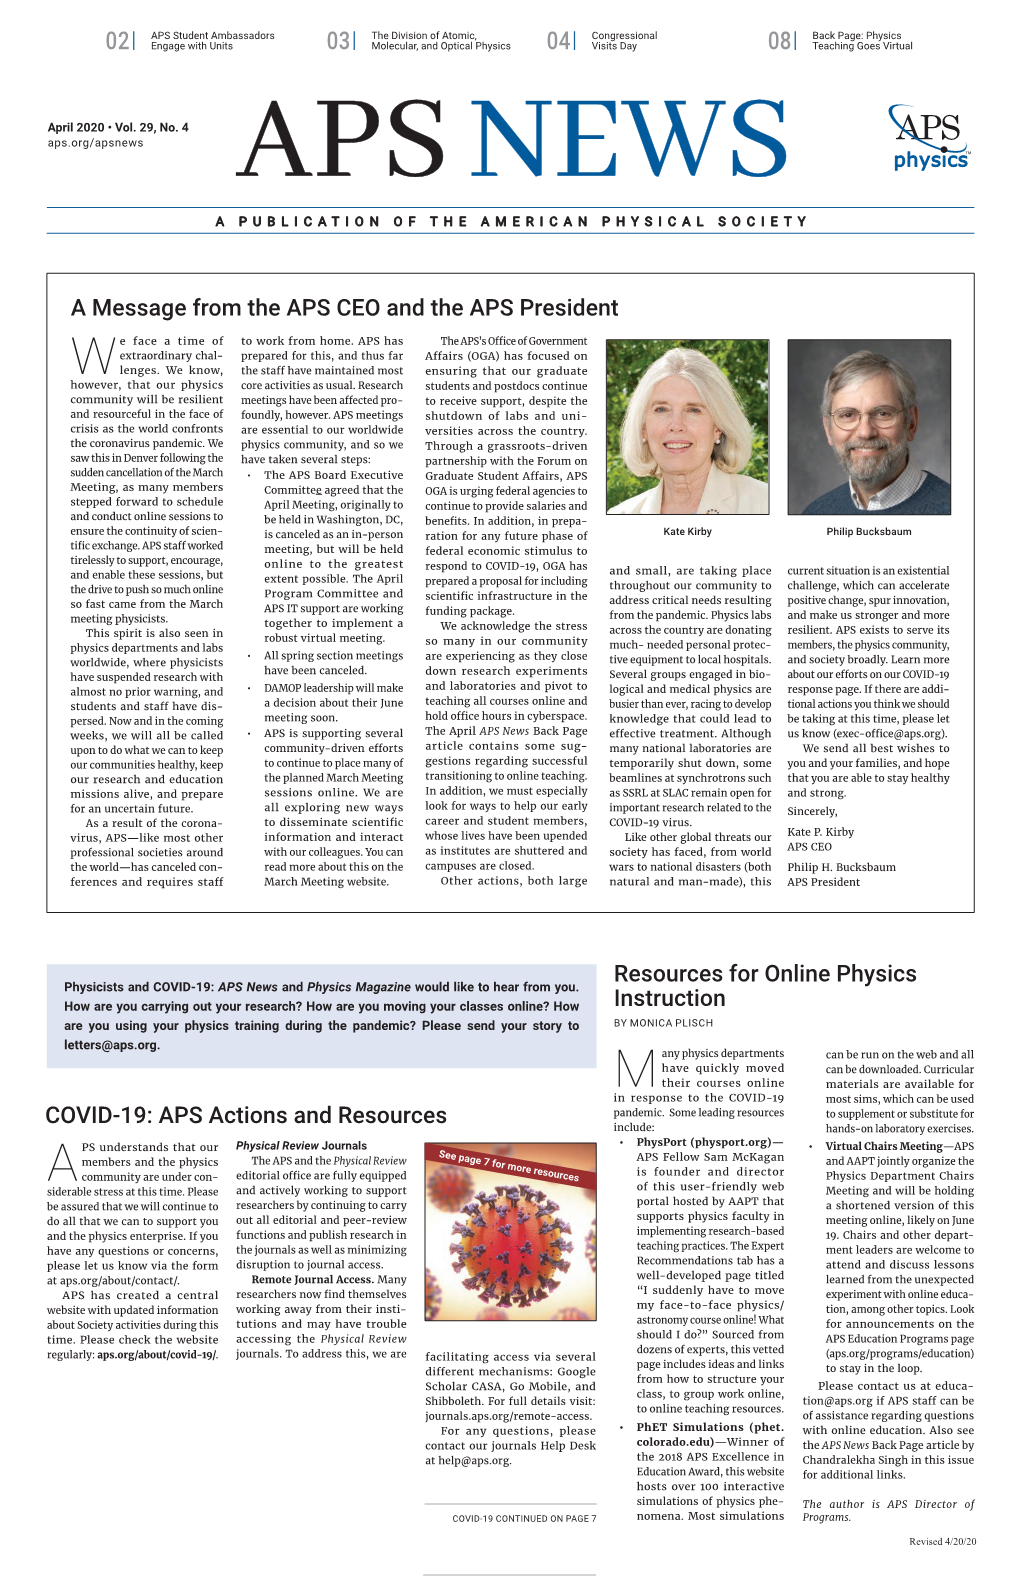 April APS News 2020, Vol. 29. No. 4